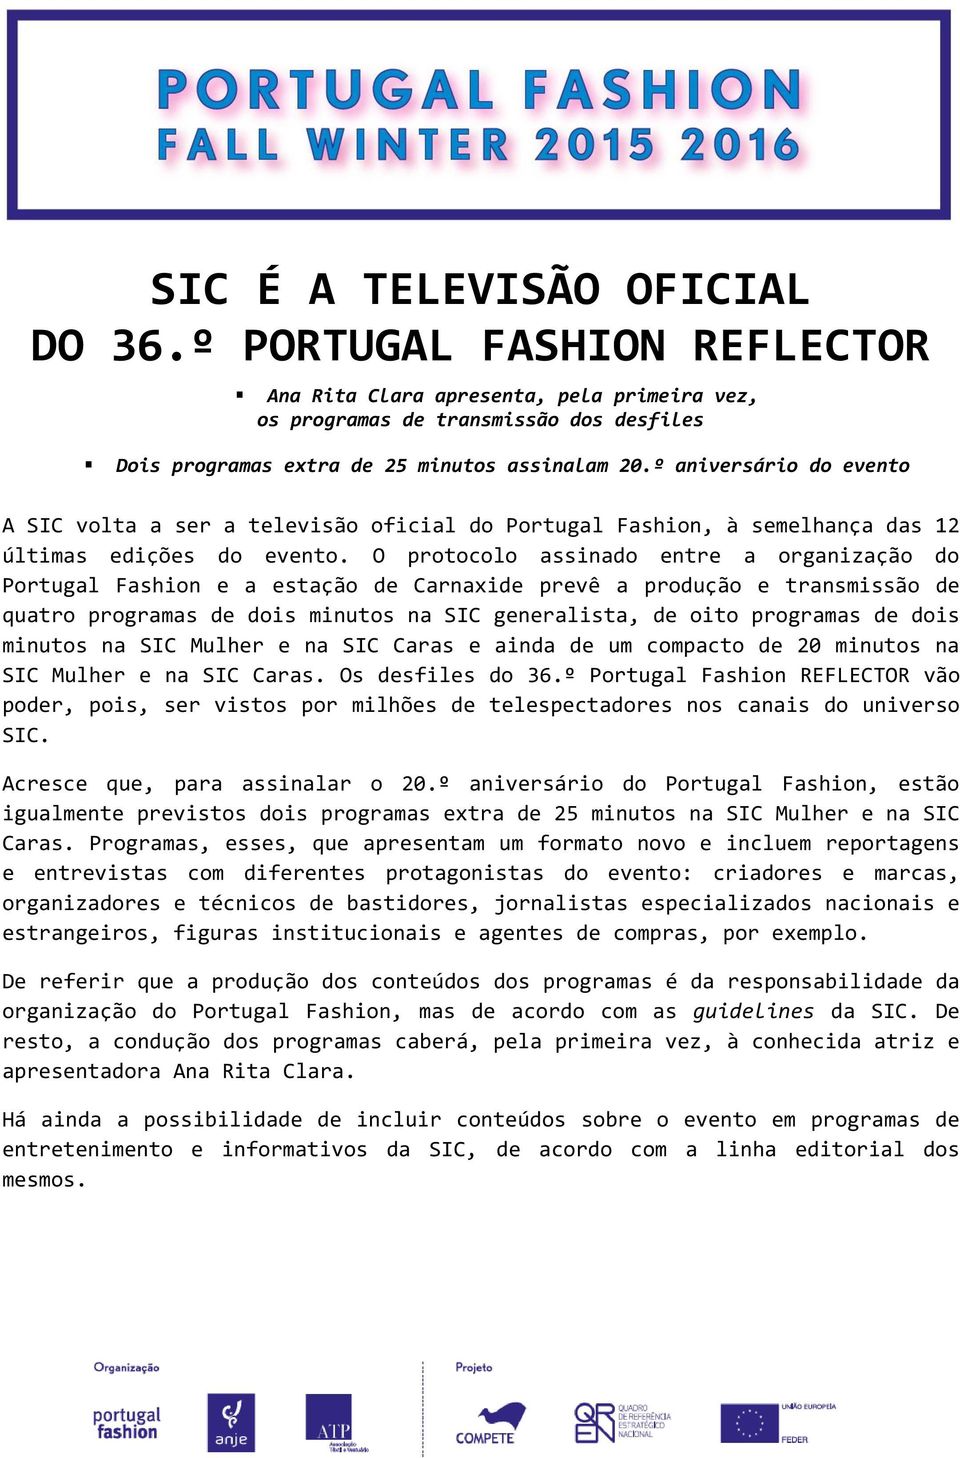 O protocolo assinado entre a organização do Portugal Fashion e a estação de Carnaxide prevê a produção e transmissão de quatro programas de dois minutos na SIC generalista, de oito programas de dois